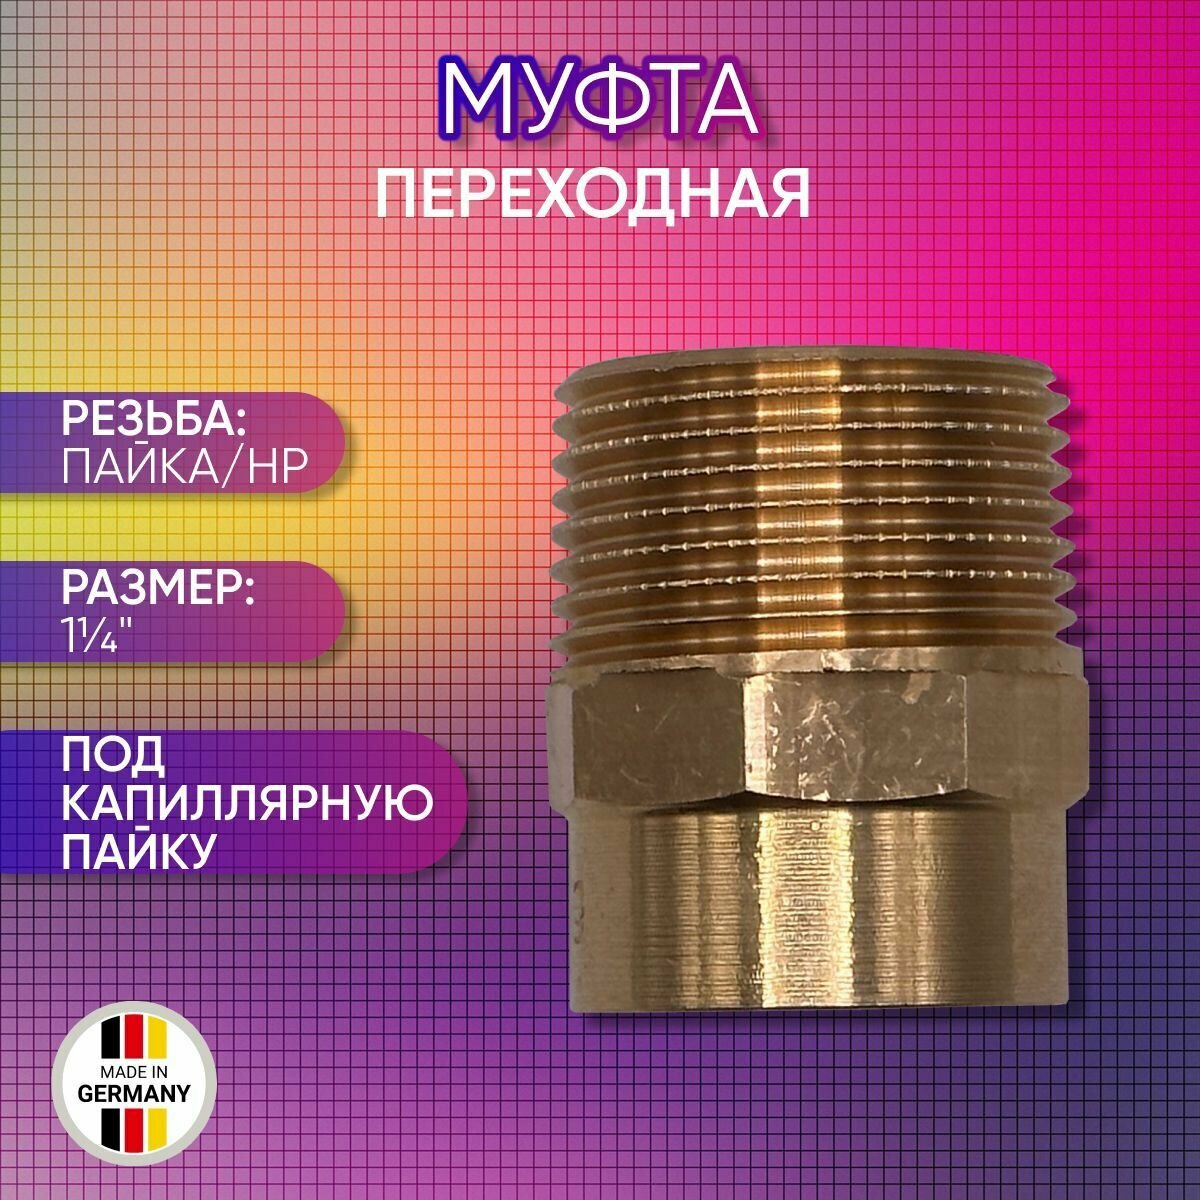 Муфта переходная бронзовая SANHA арт. 4243g пайка/НР 28 мм х 1 1/4